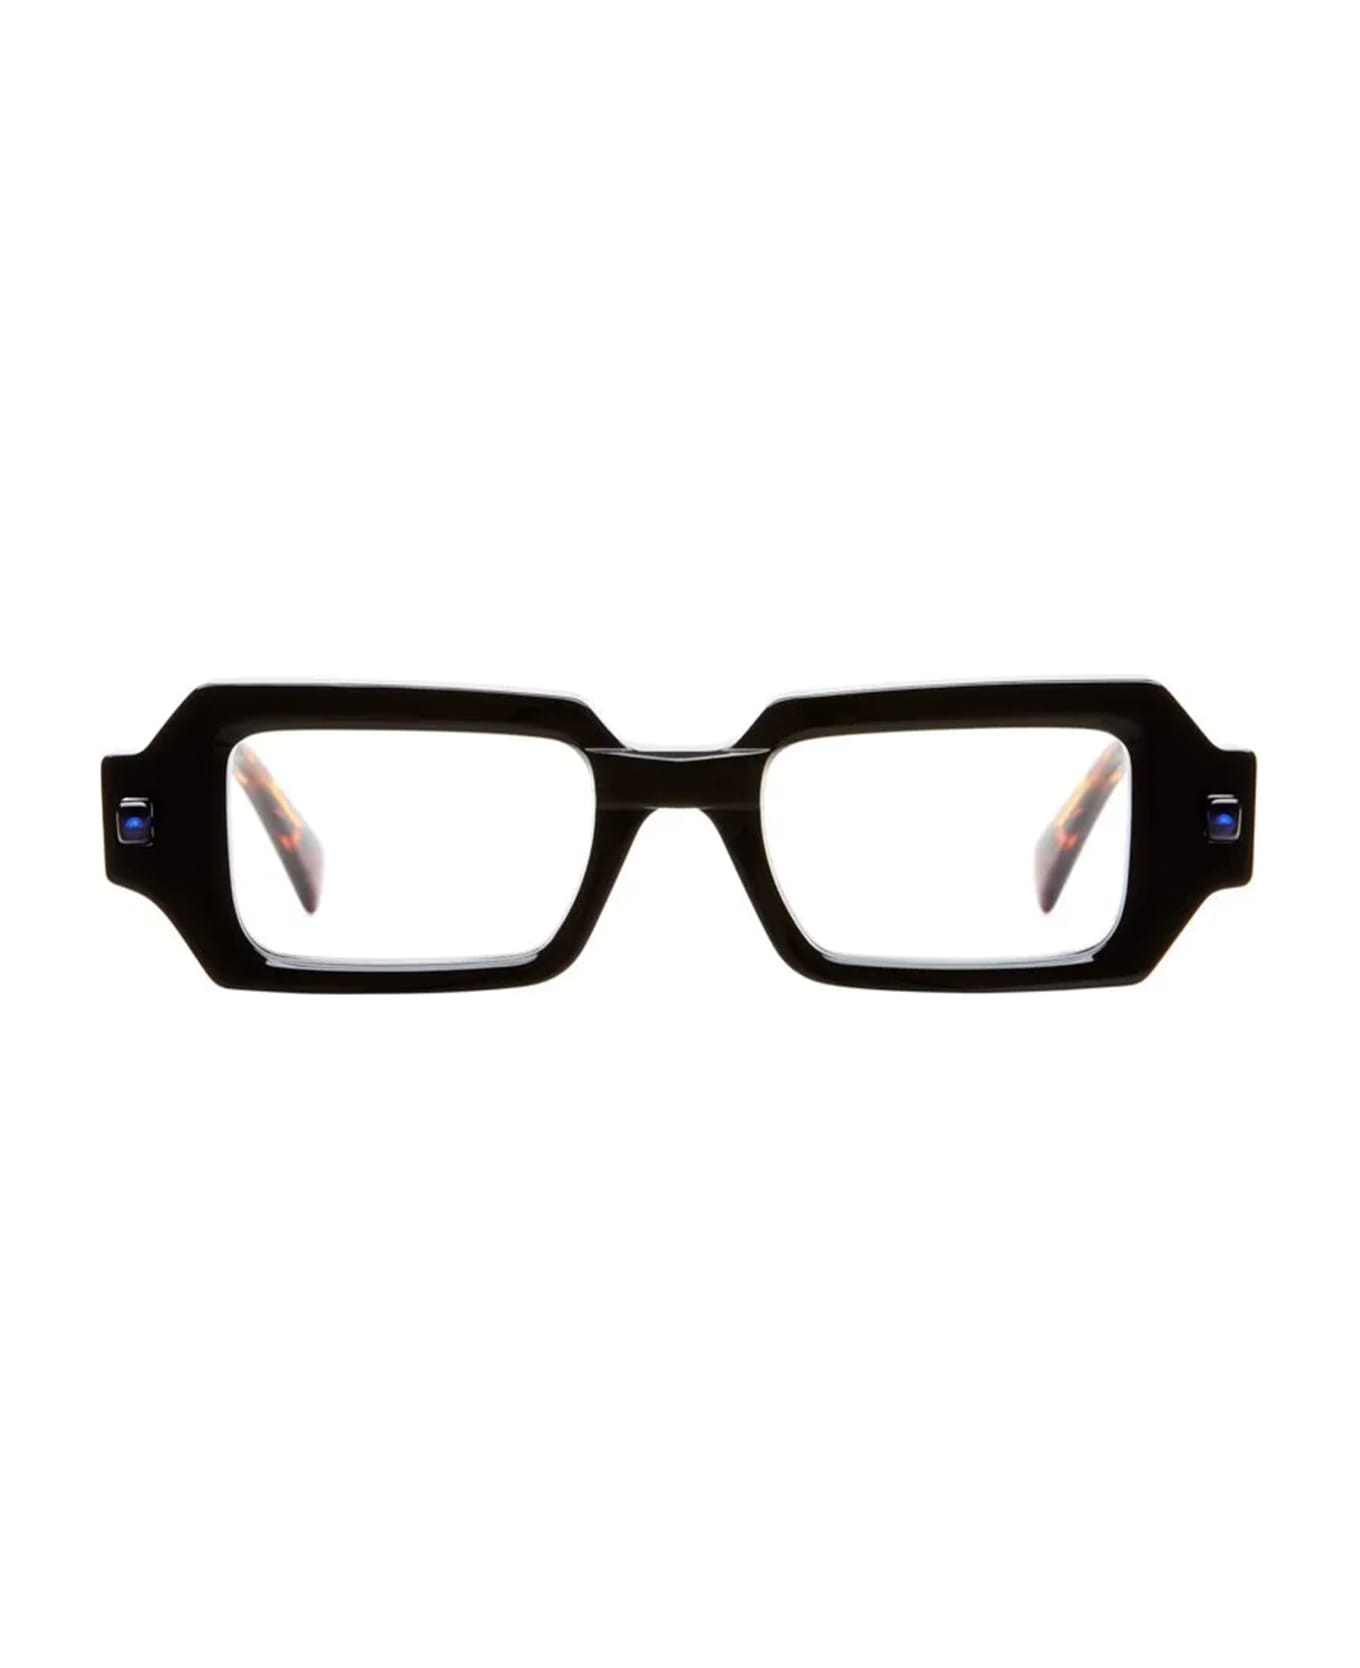 Kuboraum Mask Q9 - Black / Tortoise Rx Glasses - black tortoise